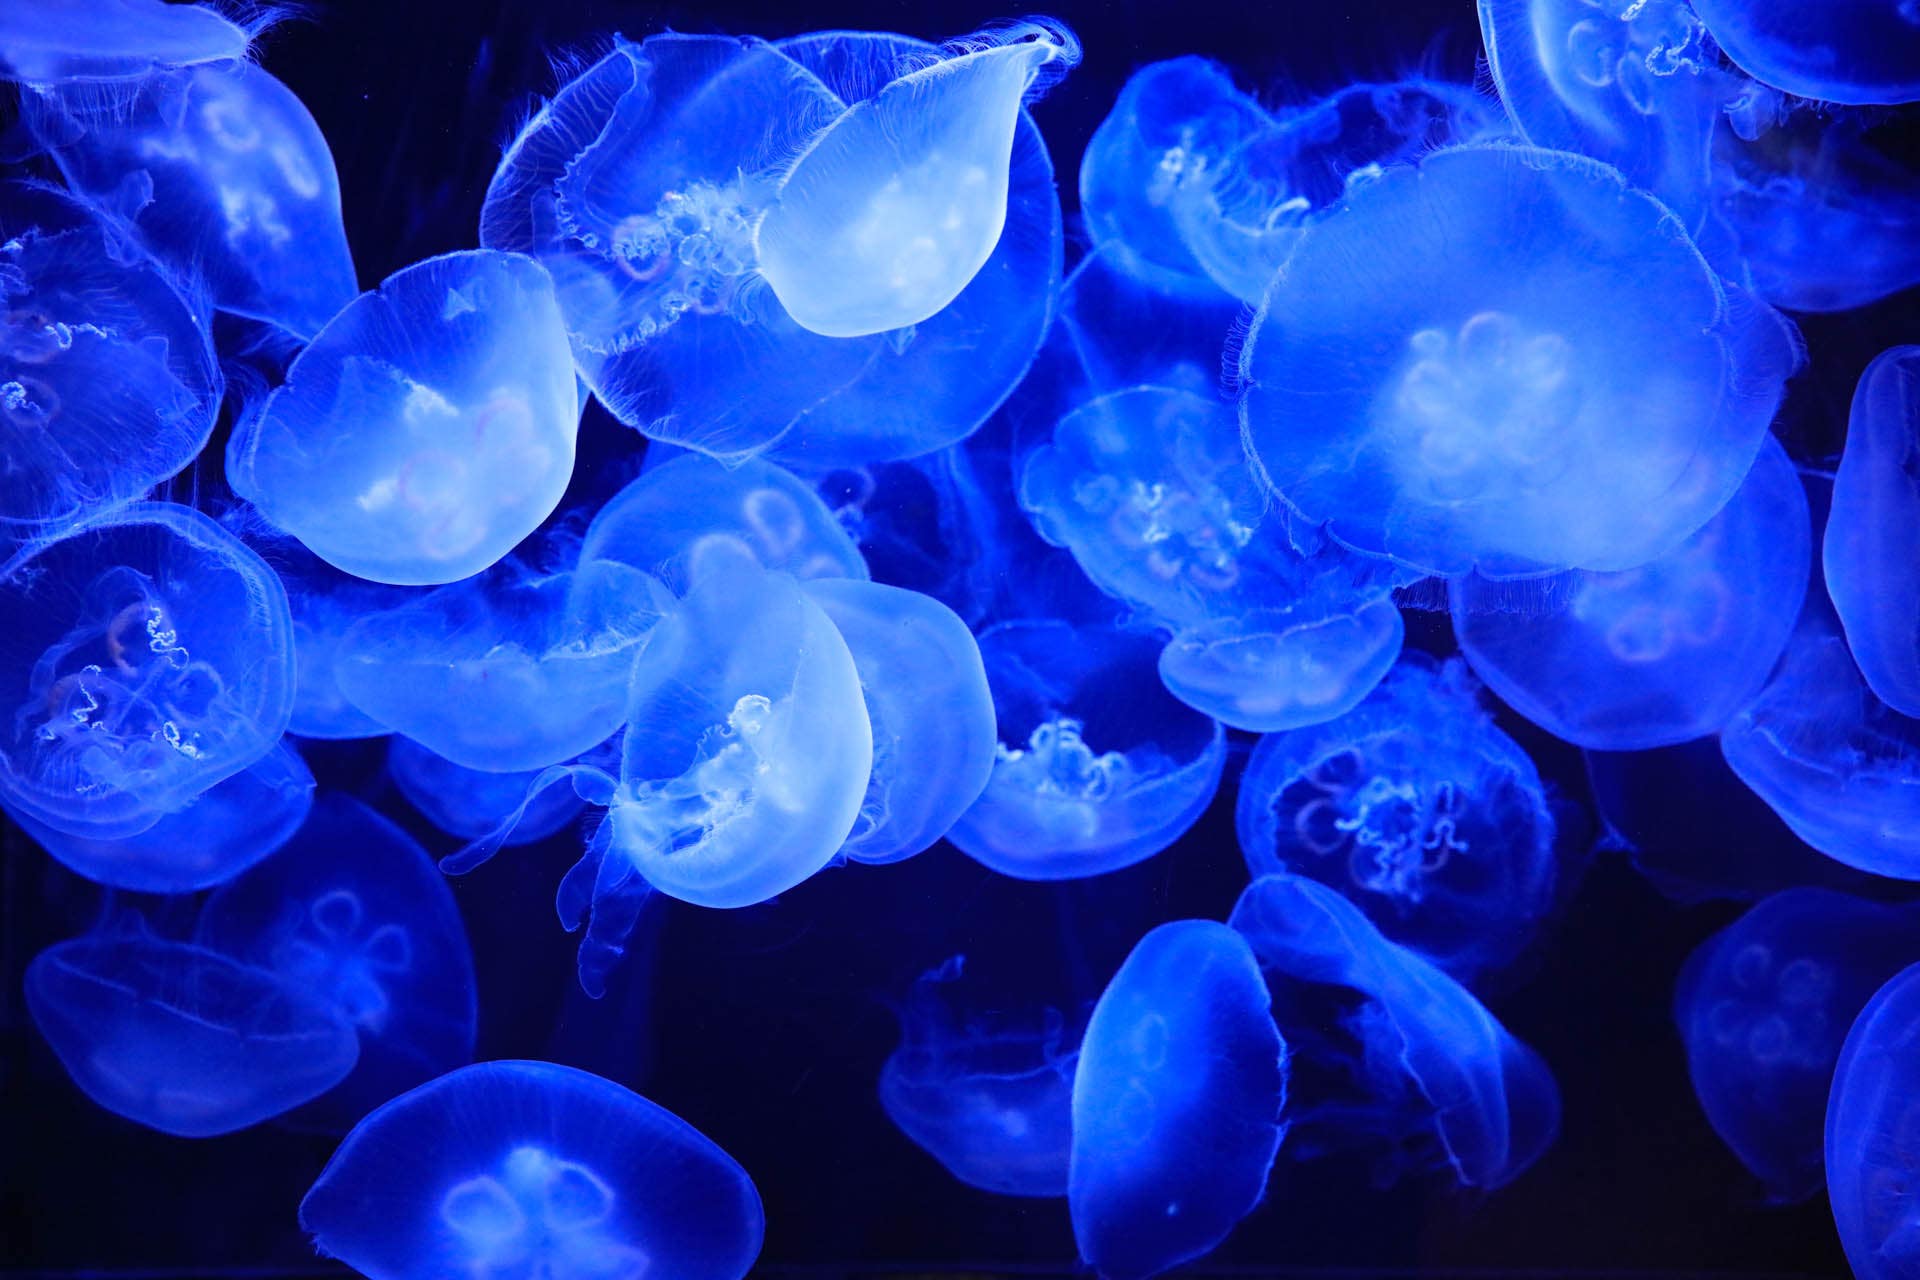 Moon jellies at Cabrillo Marine Aquarium